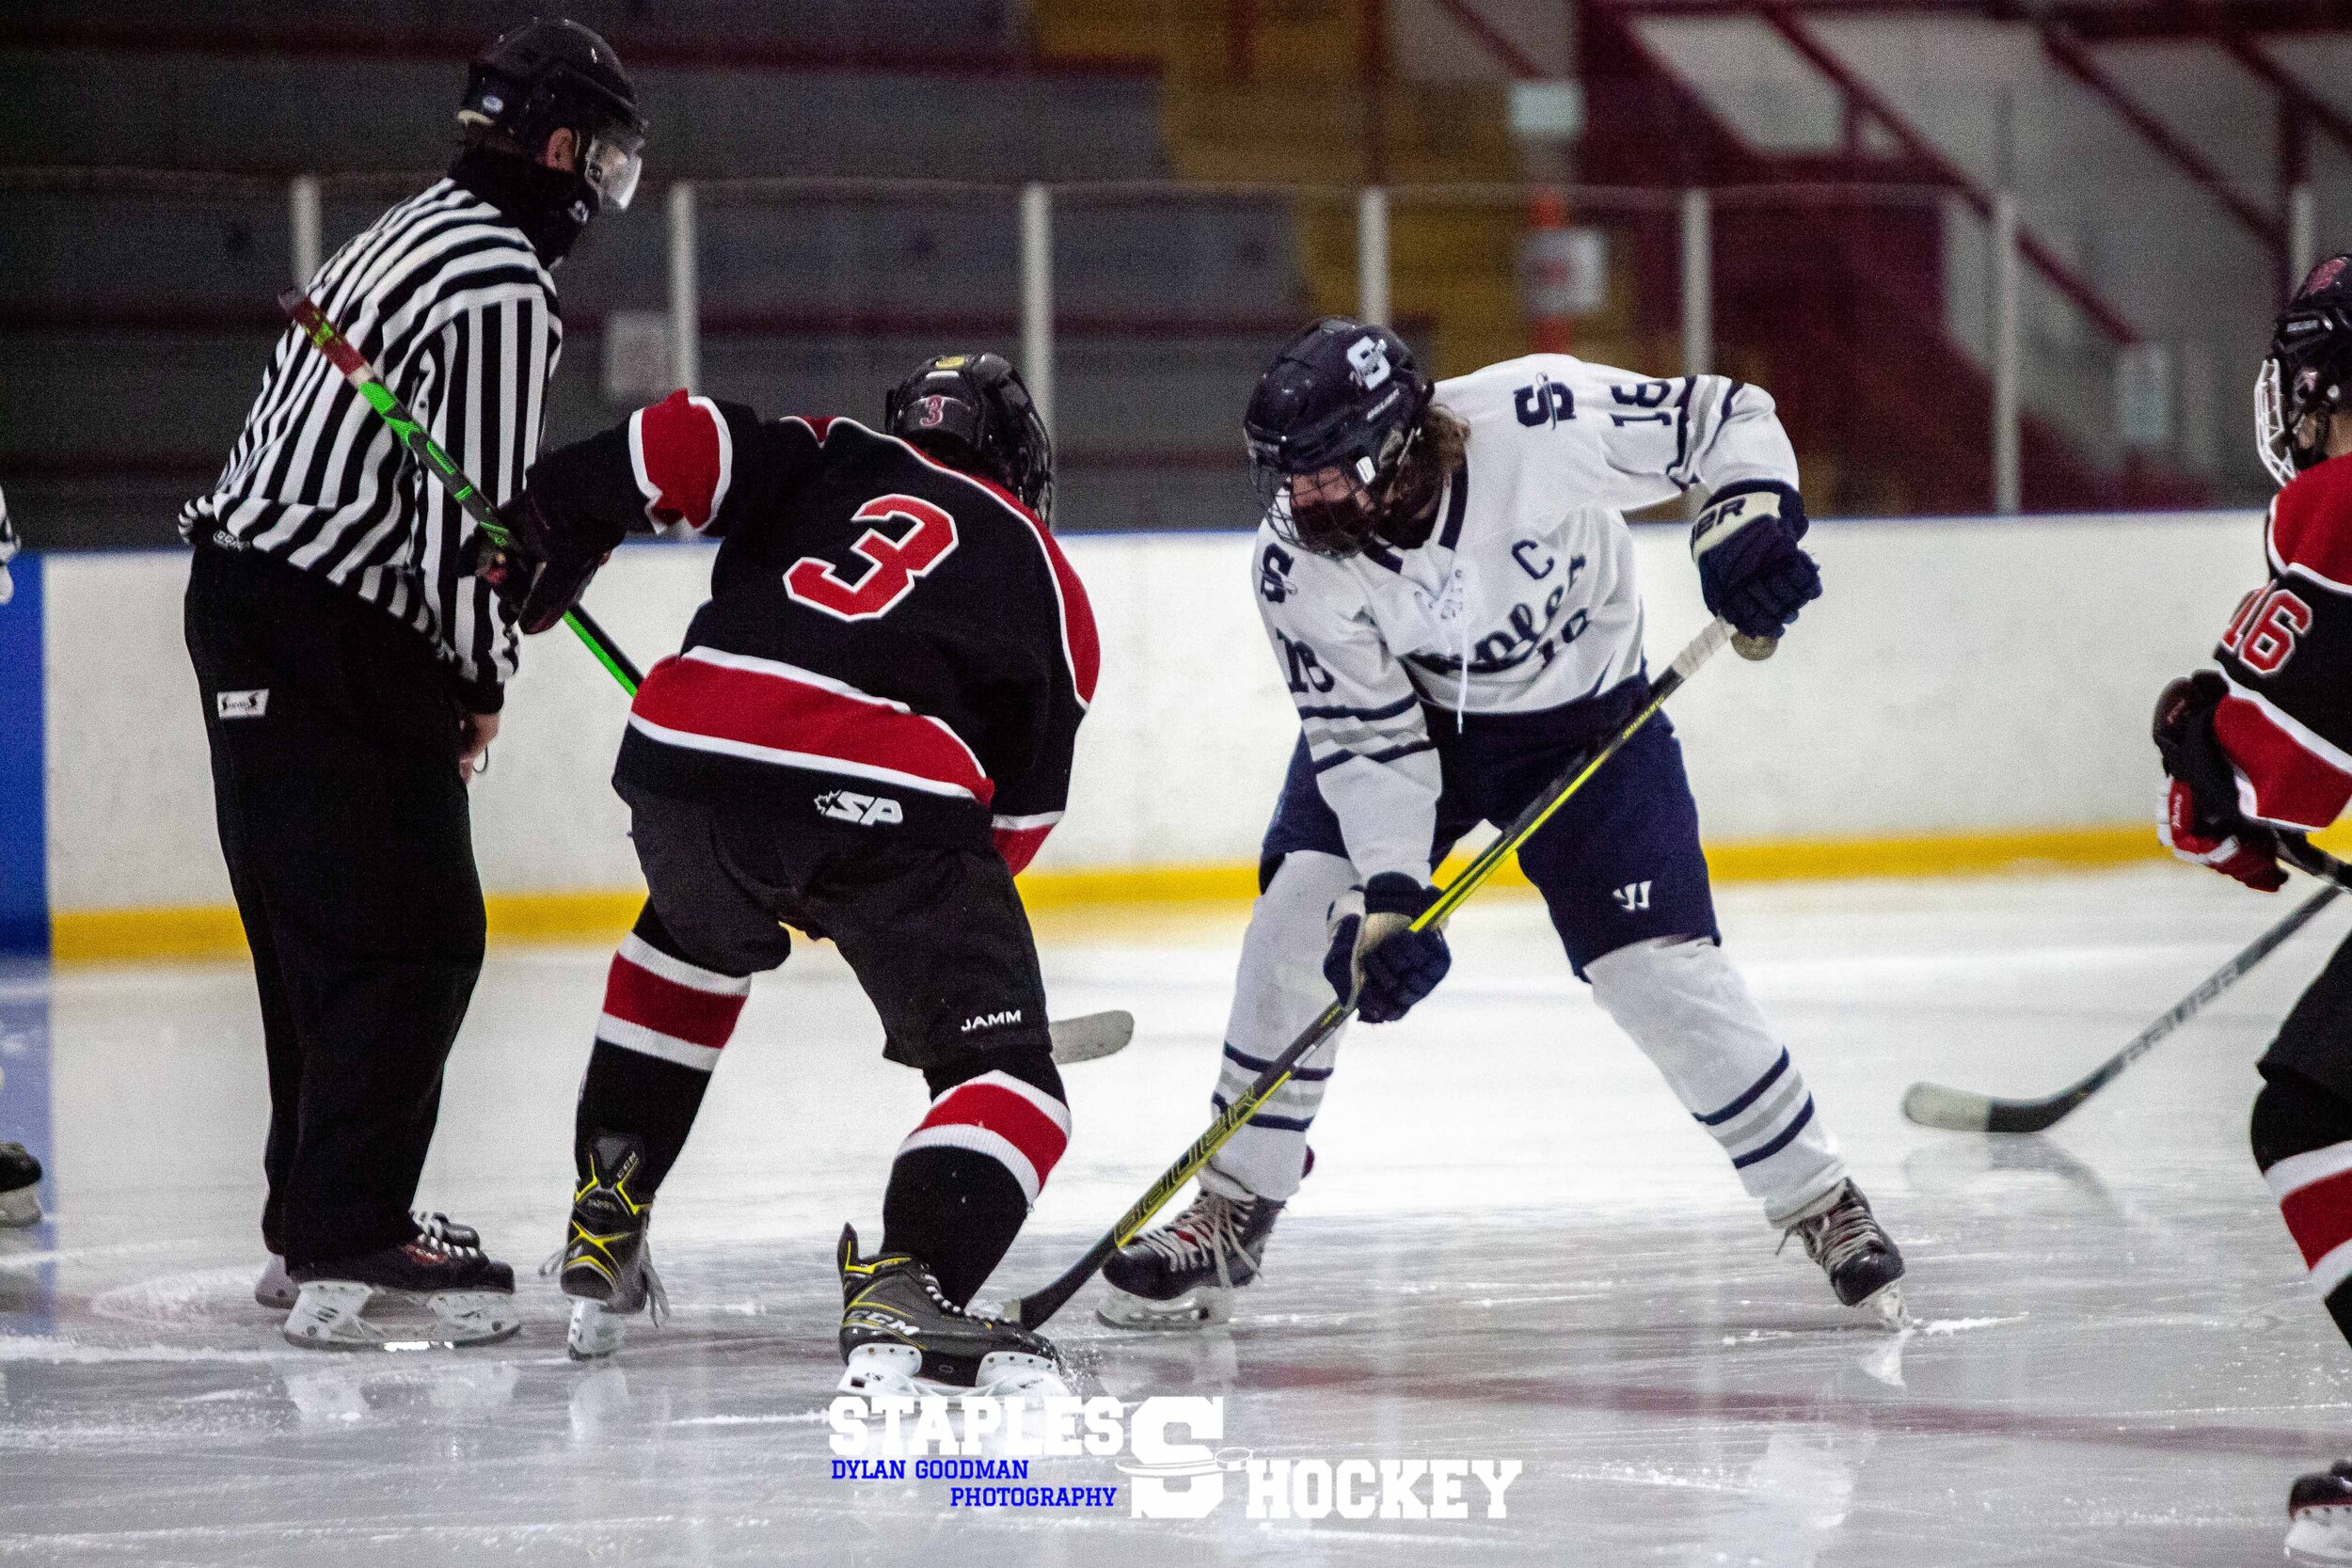 131-Staples Varsity Boys Hockey vs. Masuk - February 27, 2021 - Dylan Goodman Photography.jpg